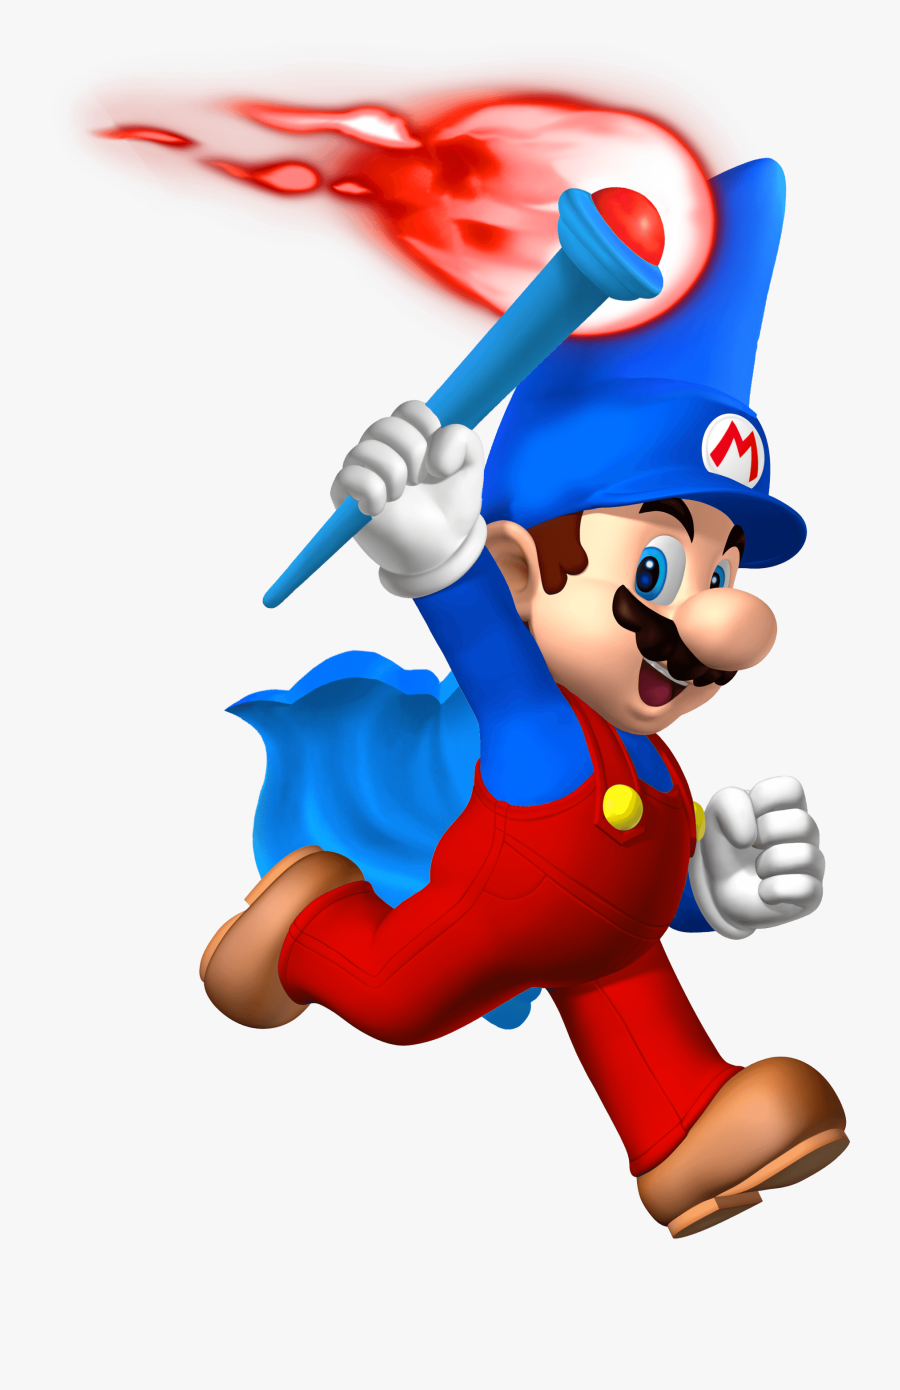 Super Mario Gravitation - Super Mario Transparent Background, Transparent Clipart